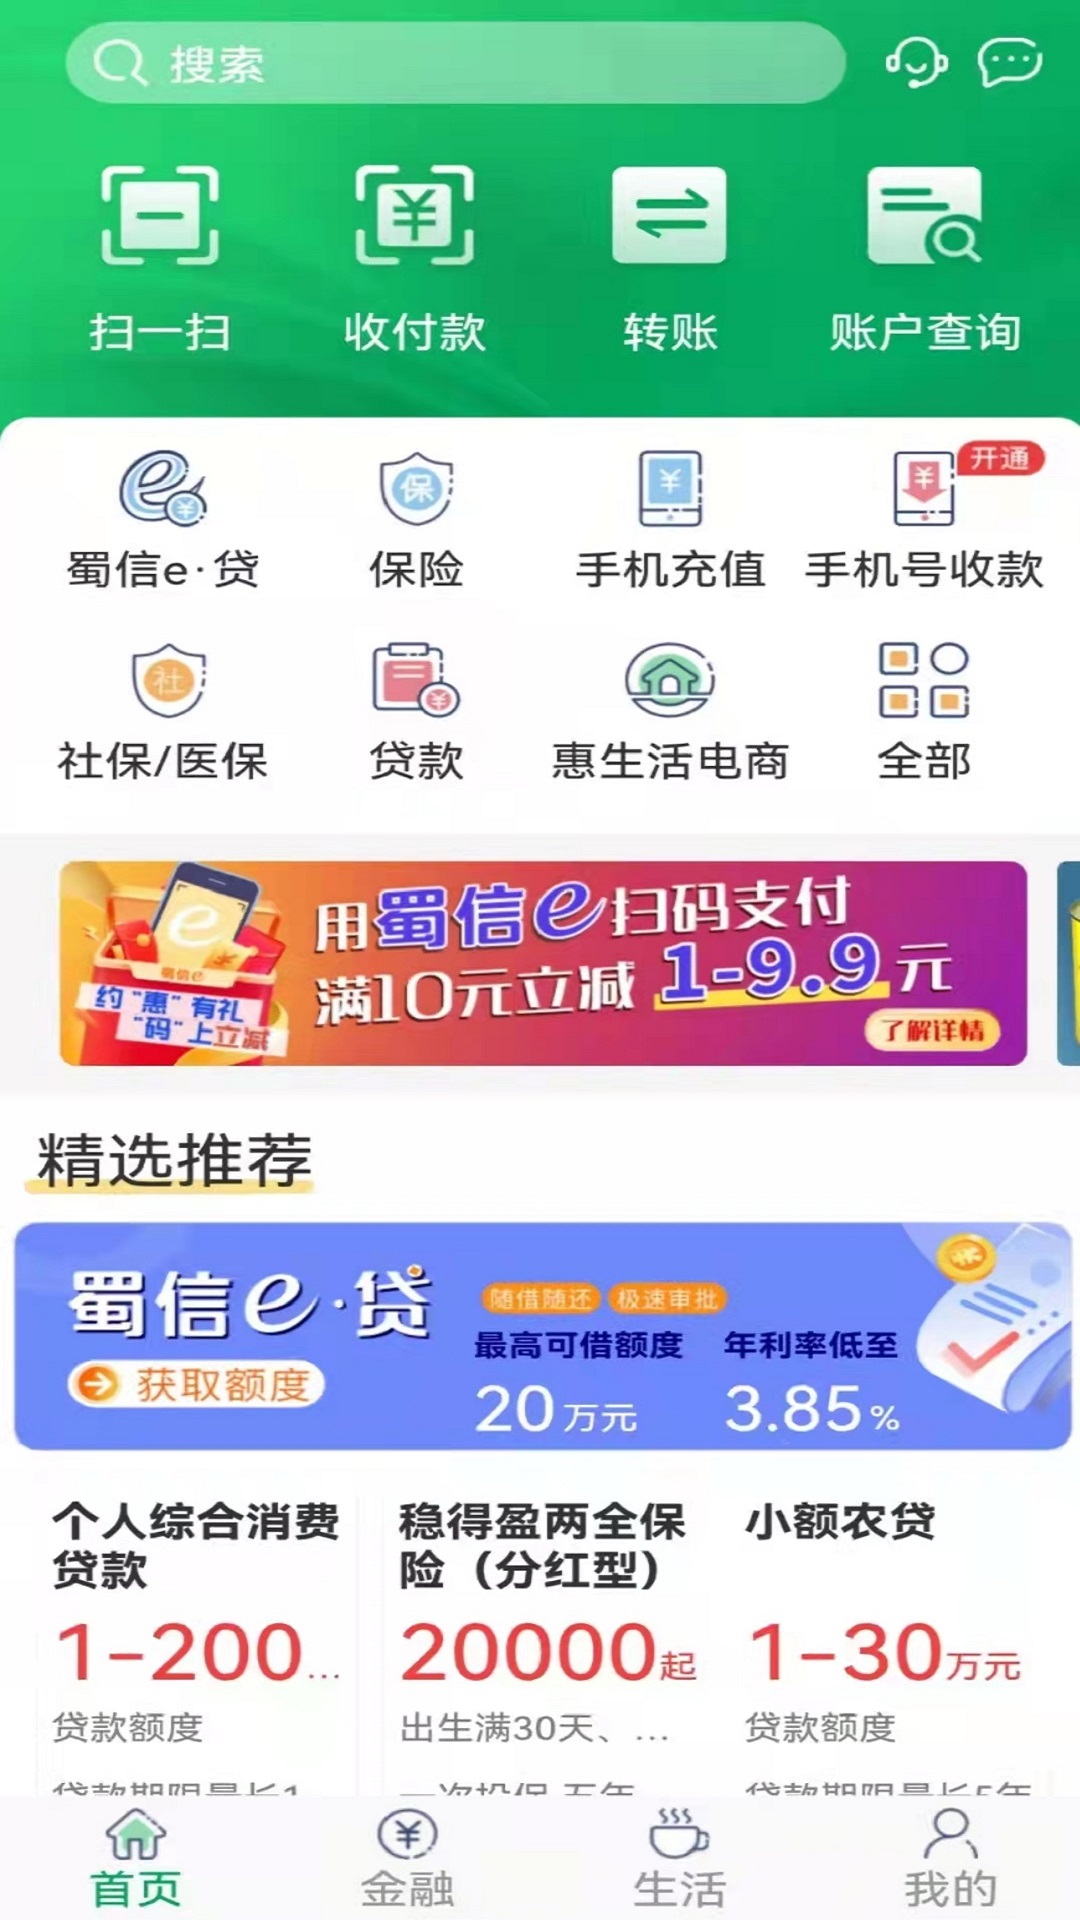 四川农信个人版手机银行是四川省农村信用社为个人客户量身打造的安卓